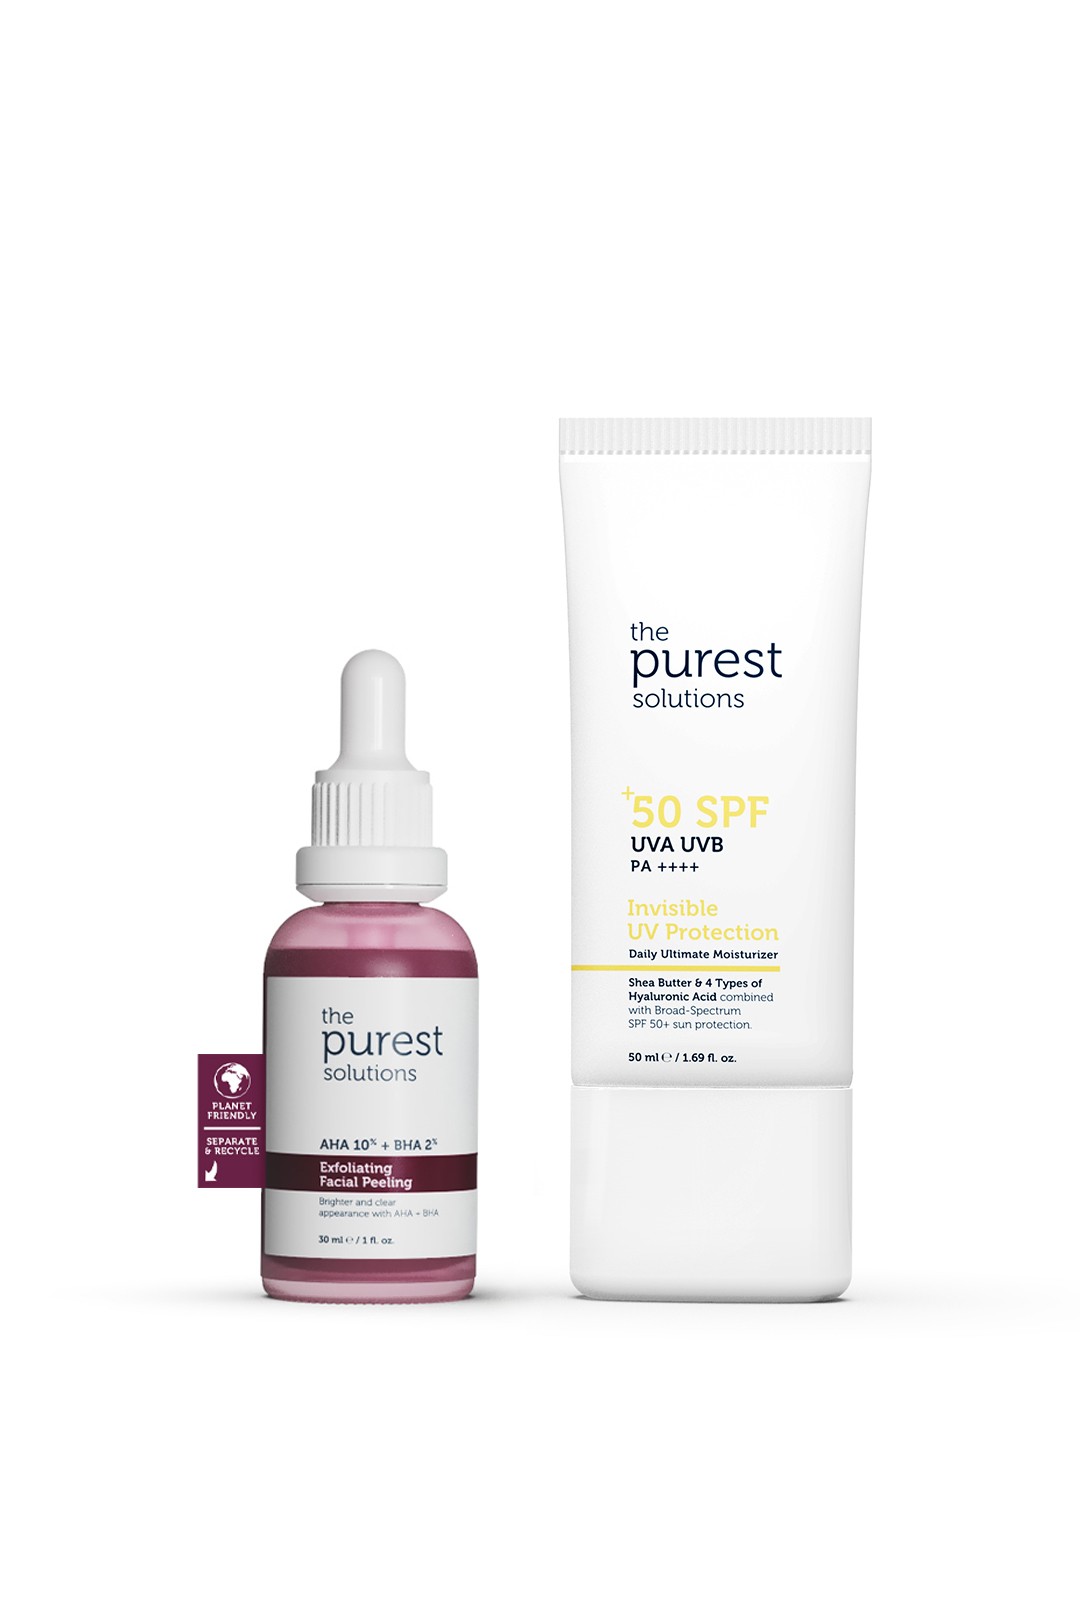 Refreshing & Skin Tone Equalizing Facial Peeling Serum + SPF+50 Sunscreen 